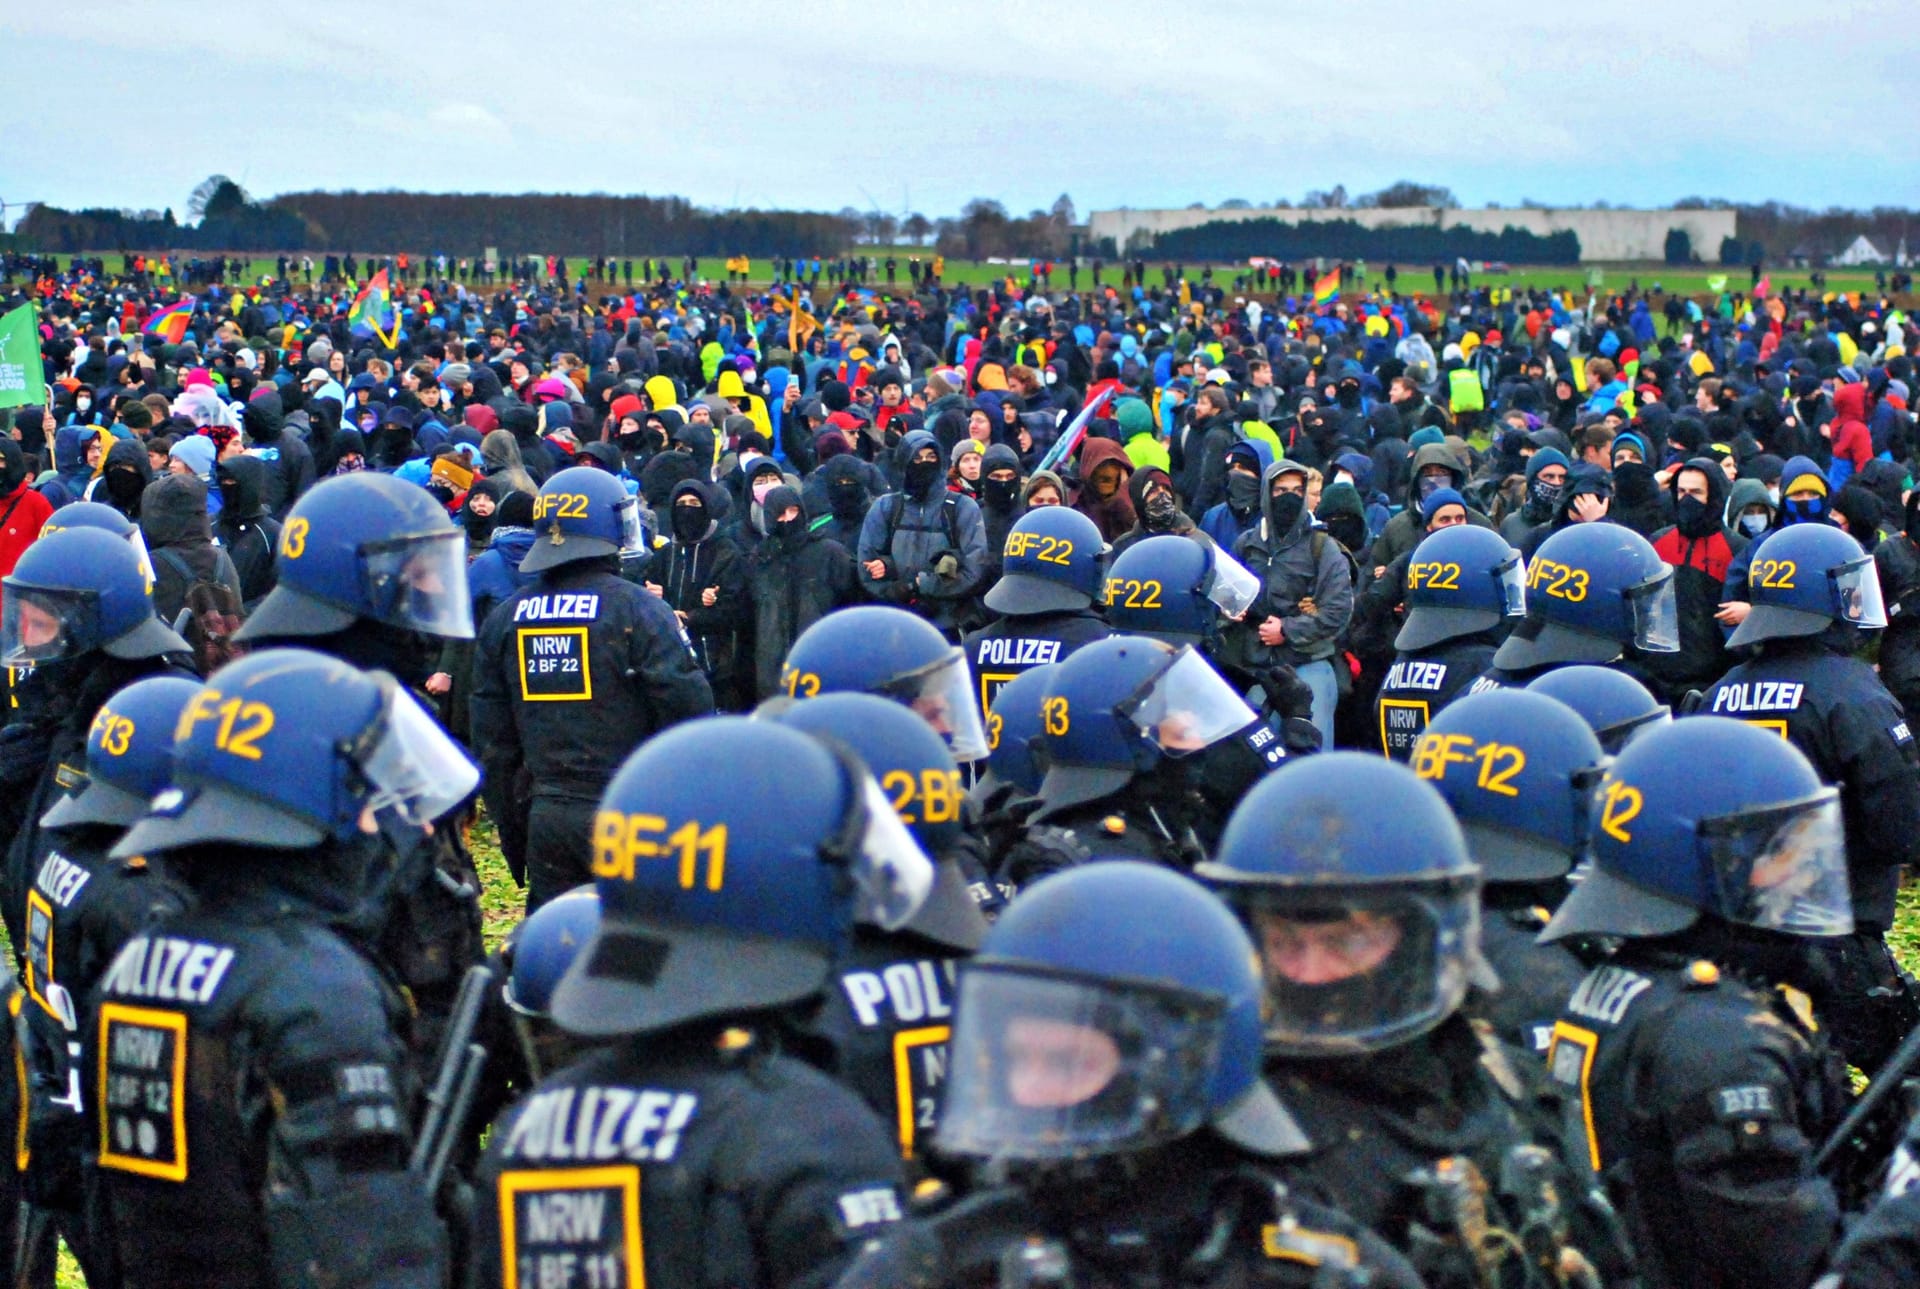 Aktivisten und Polizisten: Ein Meer aus Farben und Helmen.